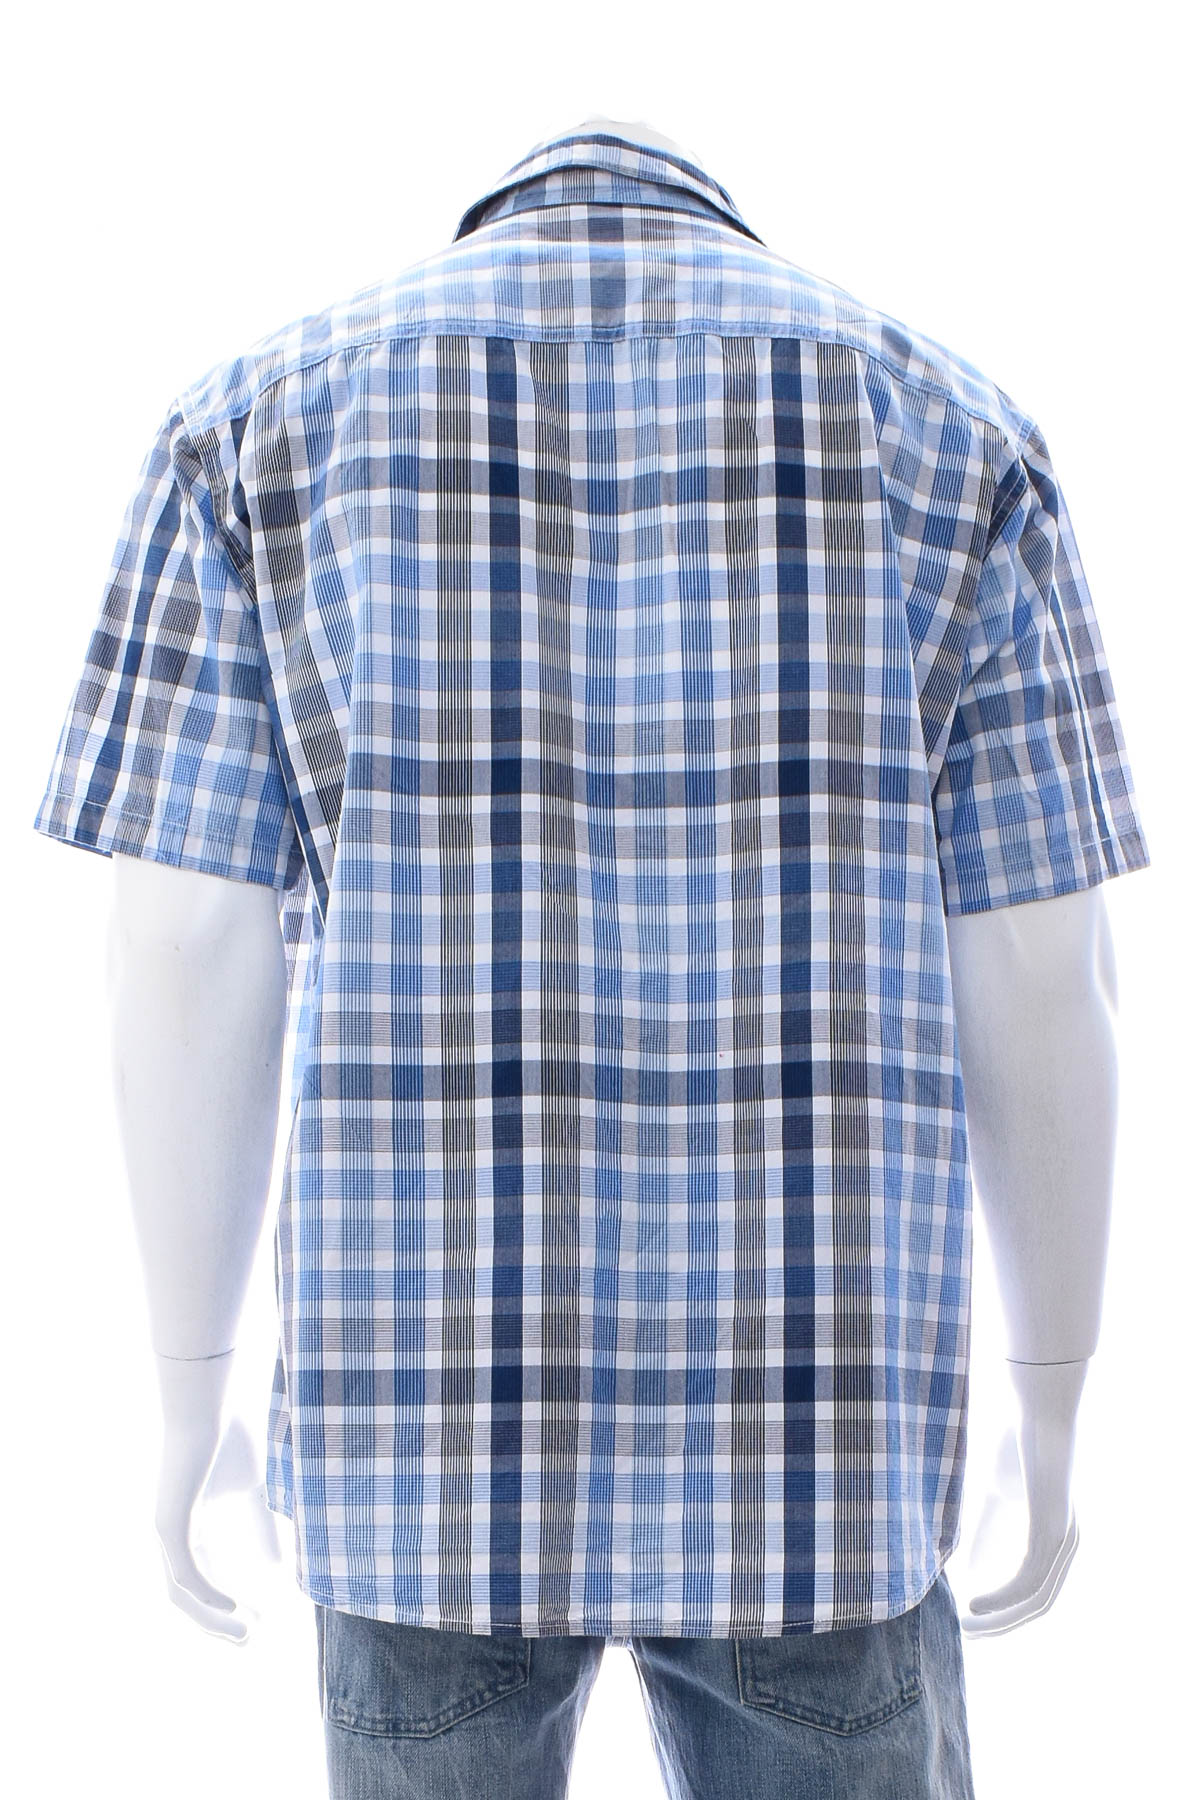 Men's shirt - TOM TAILOR - 1